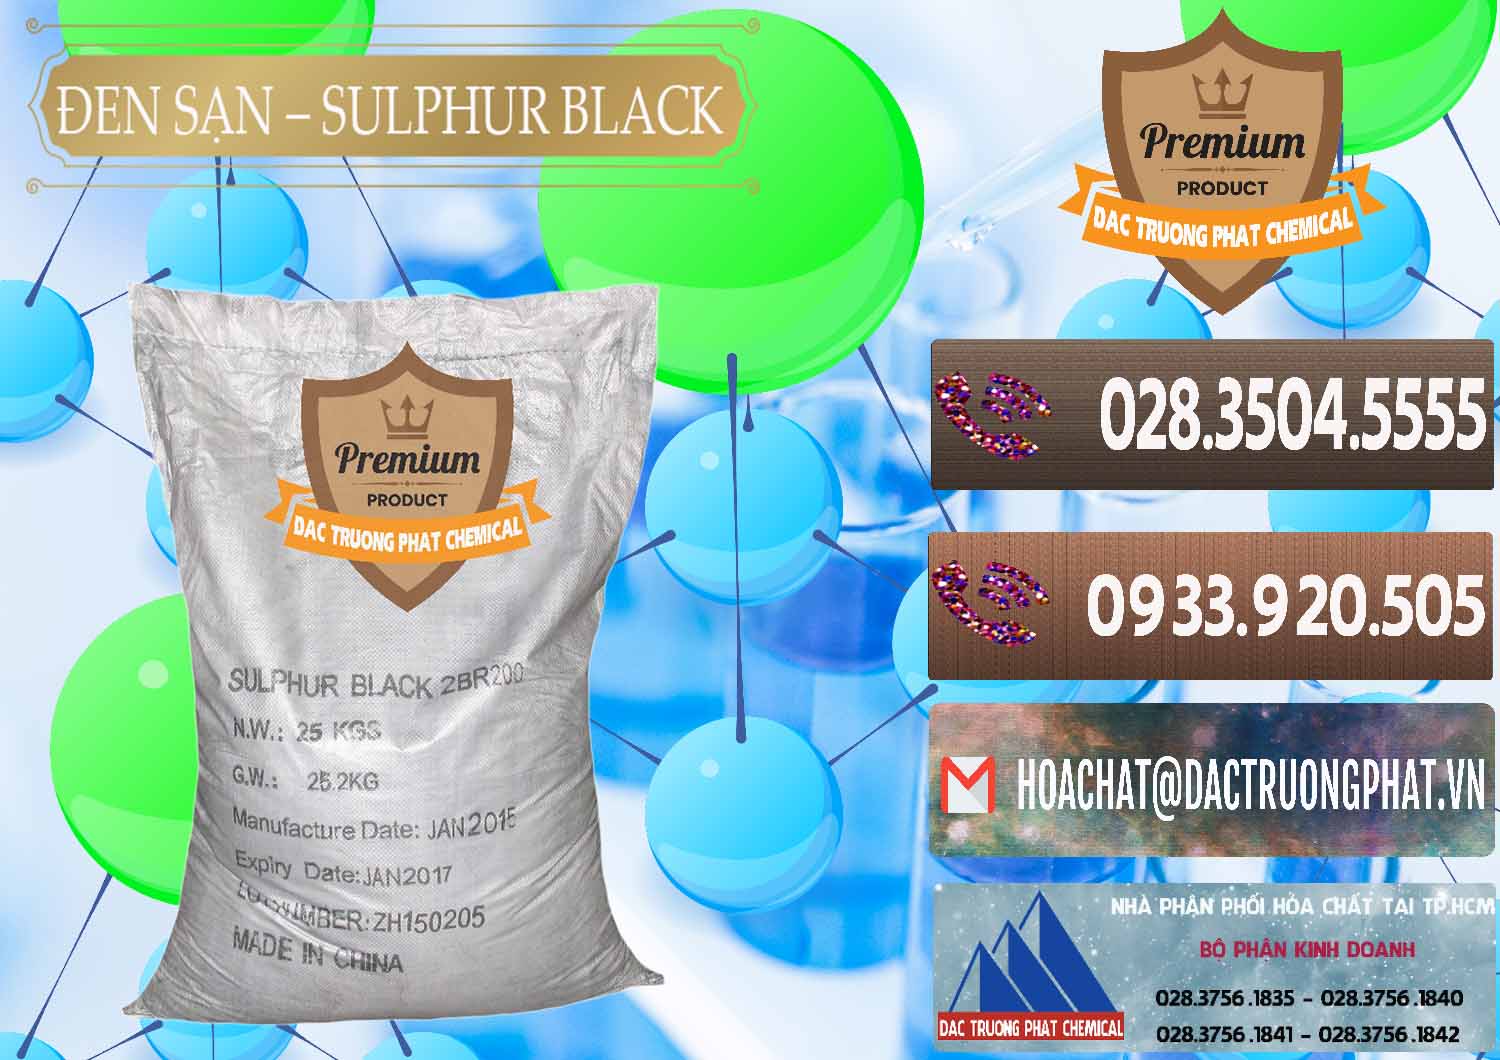 Nơi chuyên kinh doanh và bán Đen Sạn – Sulphur Black Trung Quốc China - 0062 - Công ty chuyên kinh doanh _ cung cấp hóa chất tại TP.HCM - hoachatviet.net